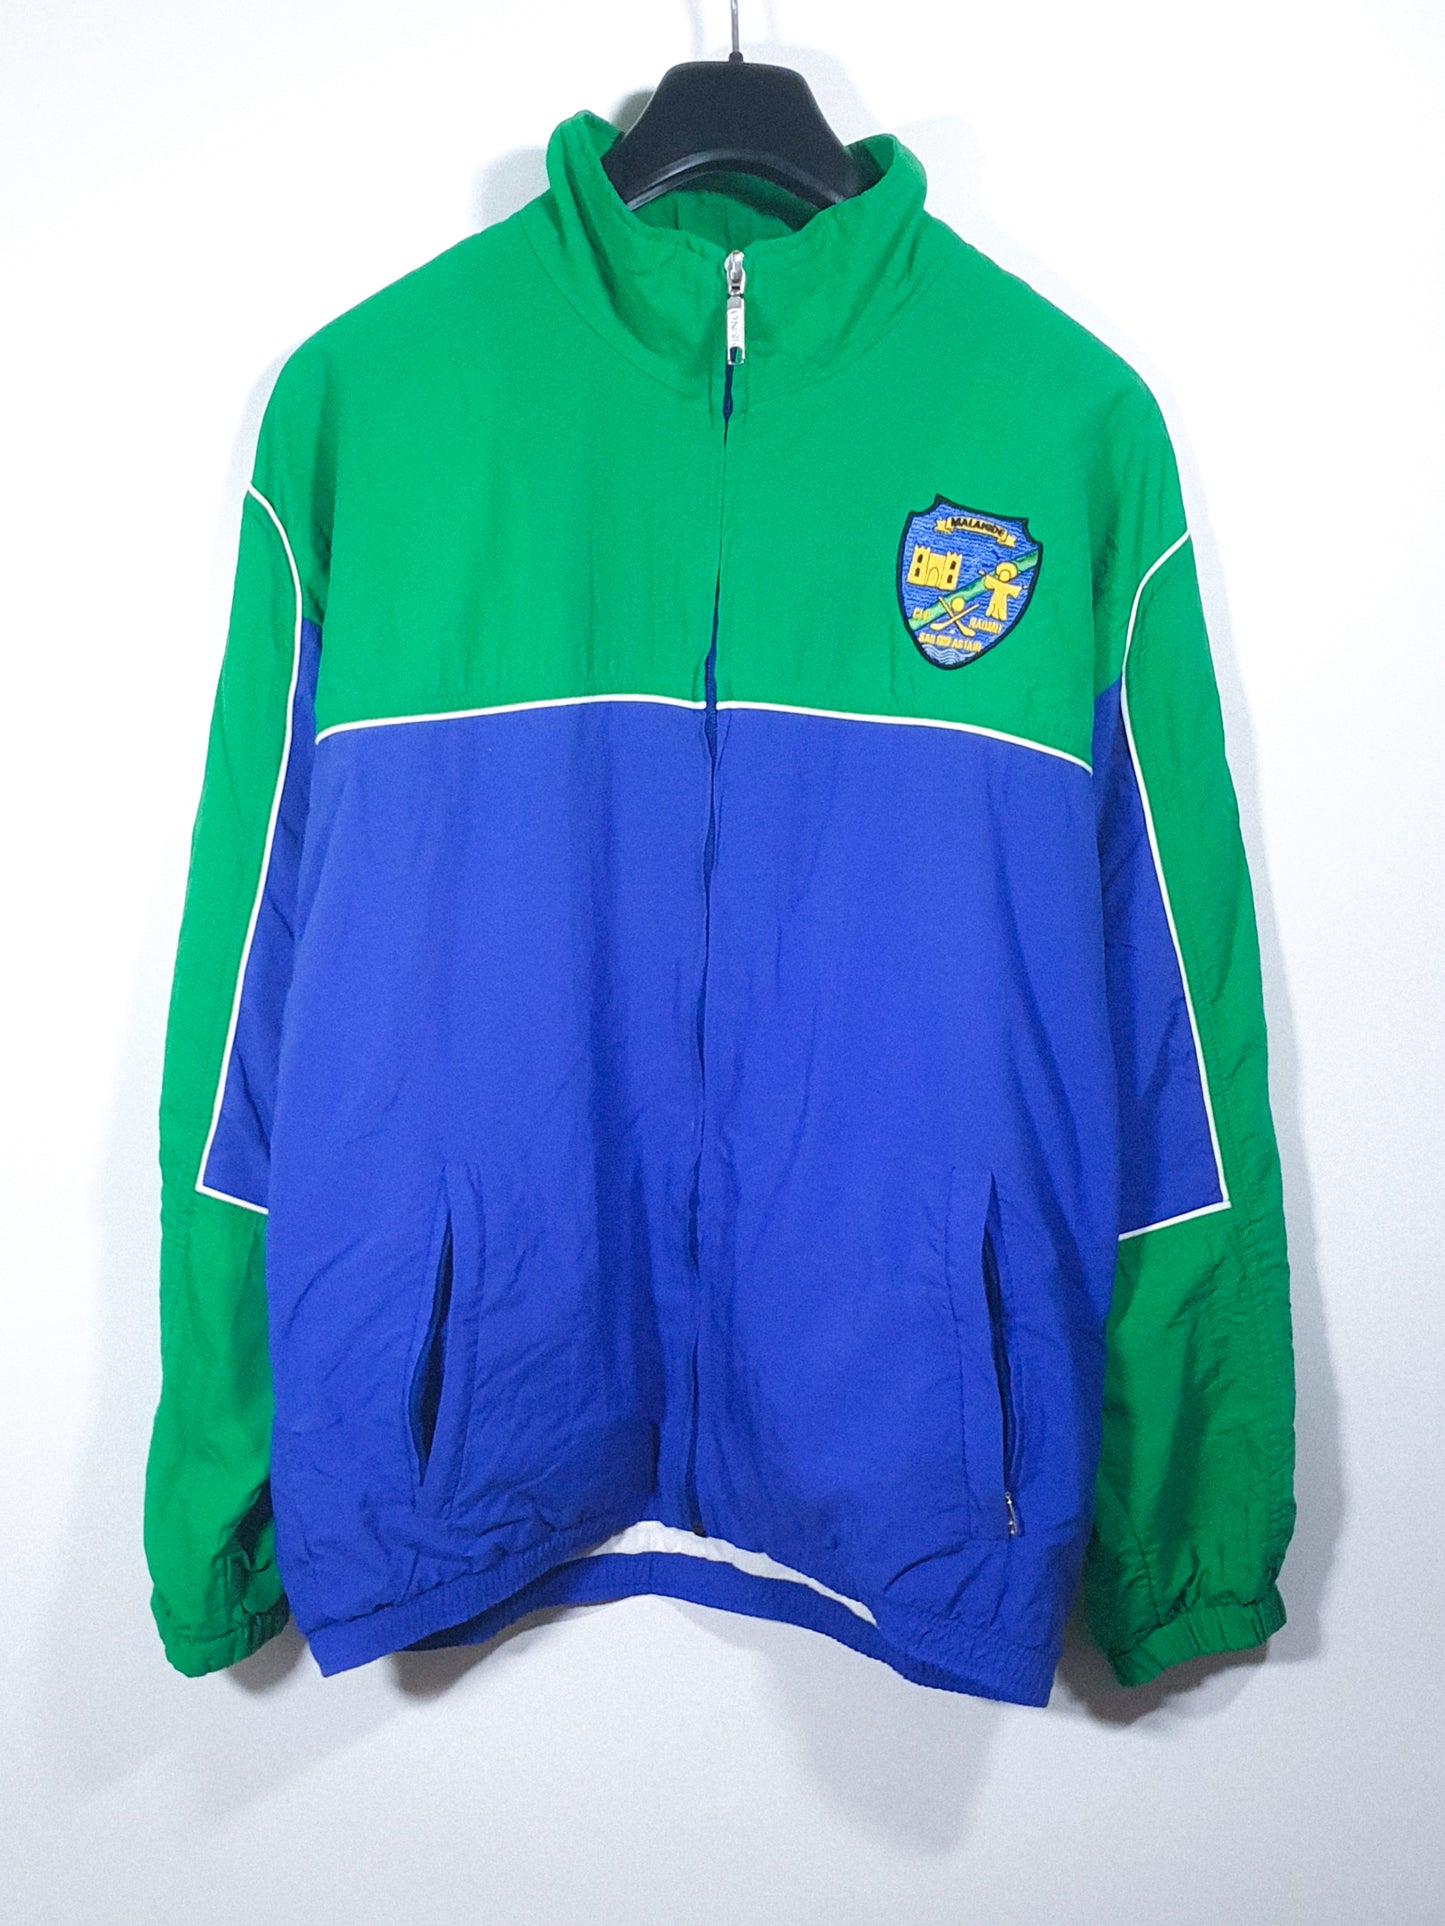 St Sylvester's/Dublin Jacket 2000s (S)